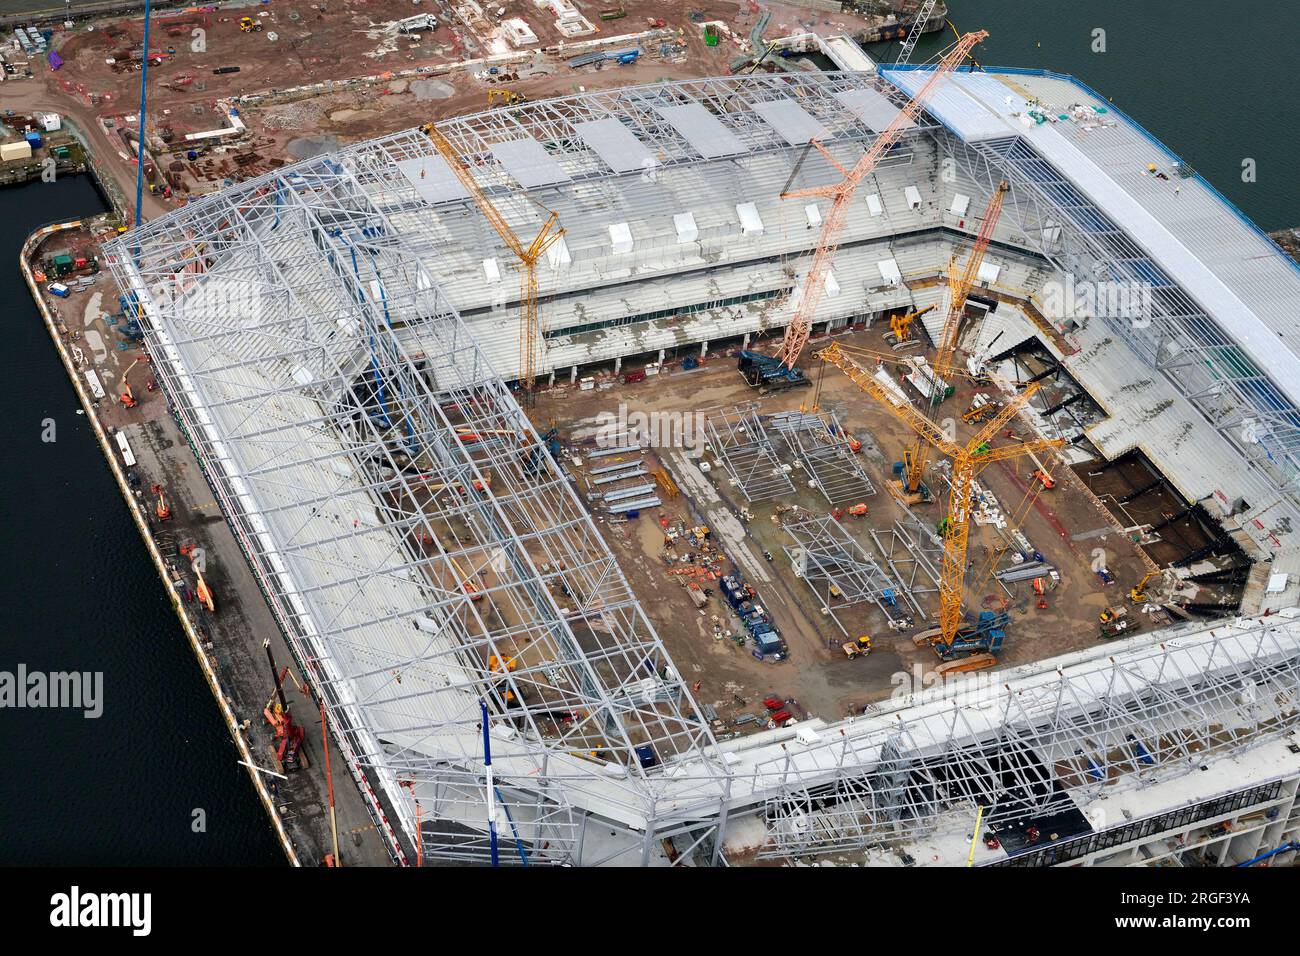 Vista aerea del nuovo stadio dell'Everton FC in costruzione, Bramley-Moore Dock, Merseyside, Inghilterra nord-occidentale, Regno Unito Foto Stock